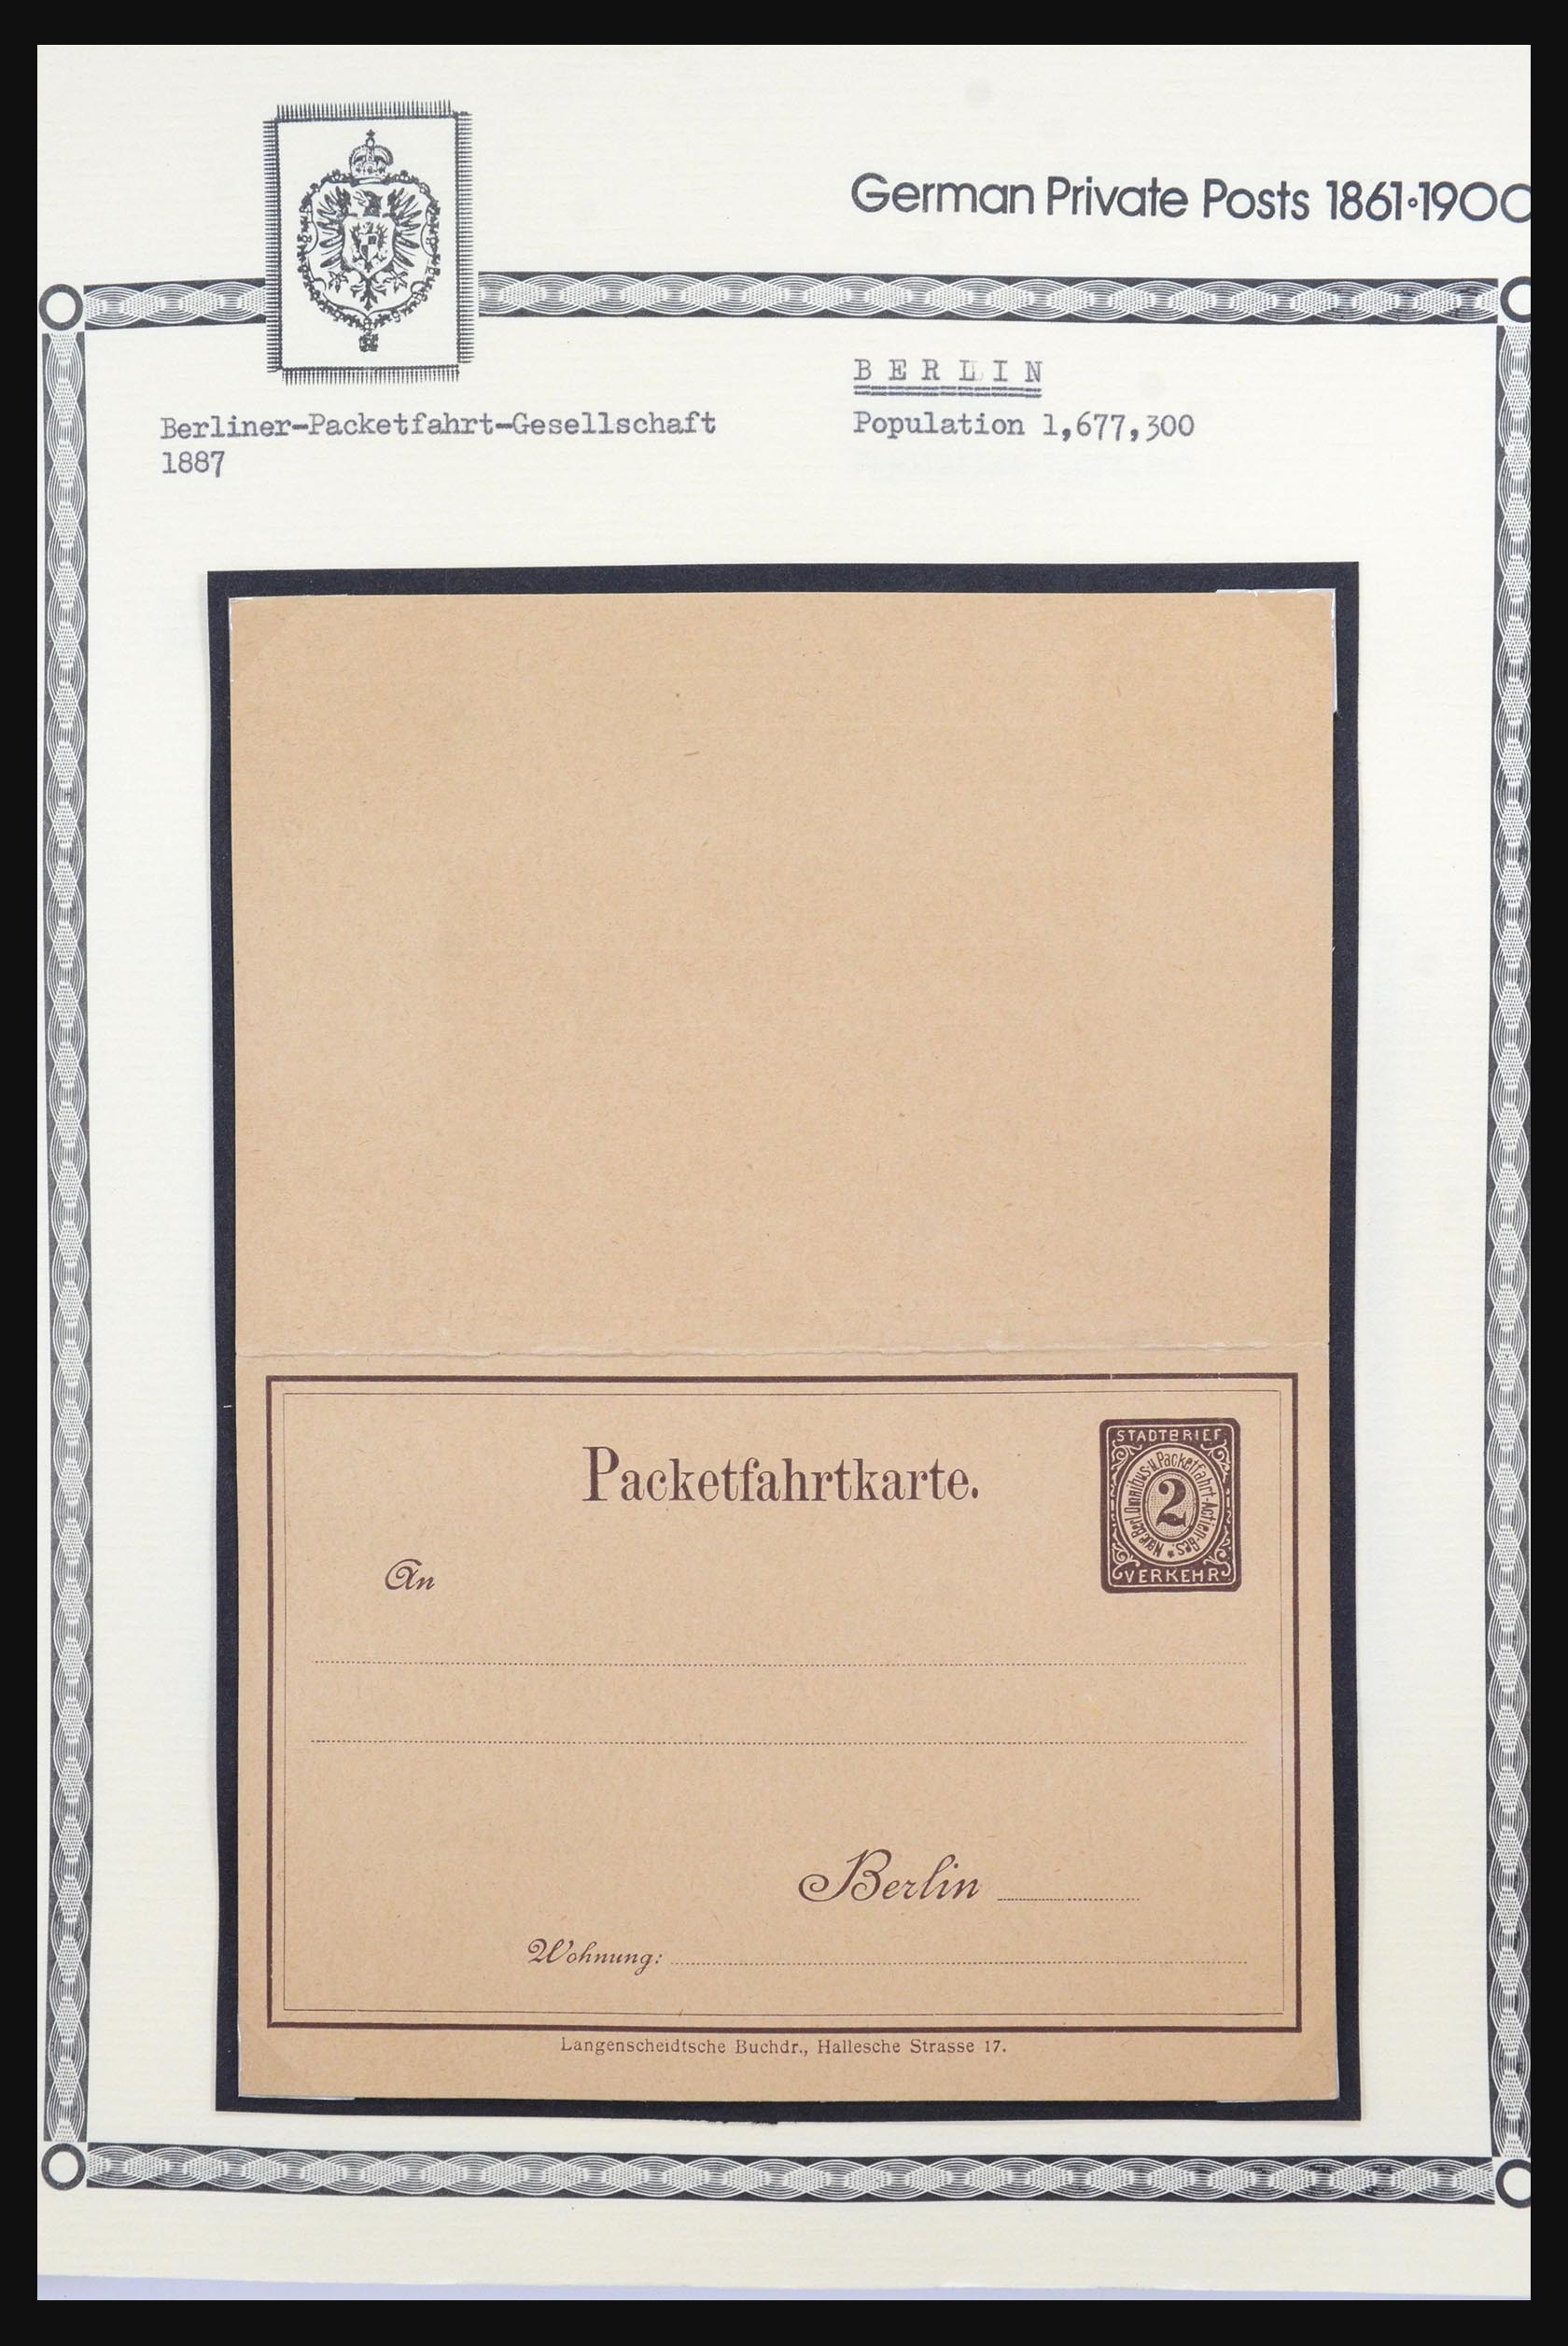 31578 012 - 31578 Germany localpost 1861-1900.